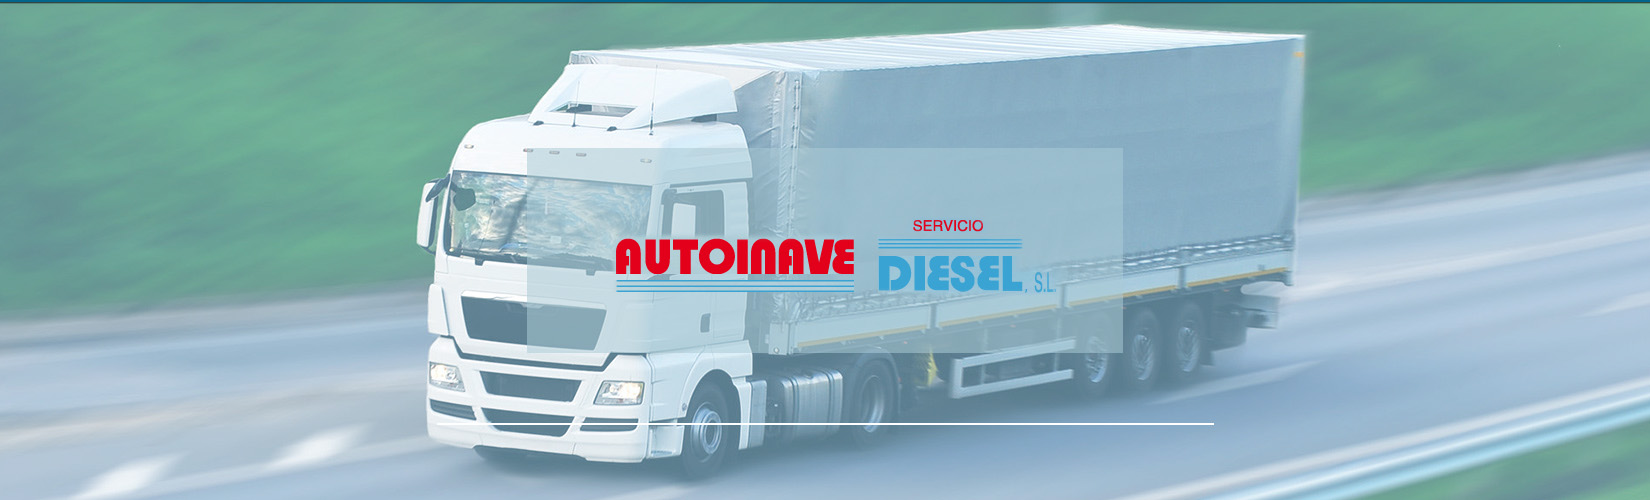 Autoinave Diesel SL